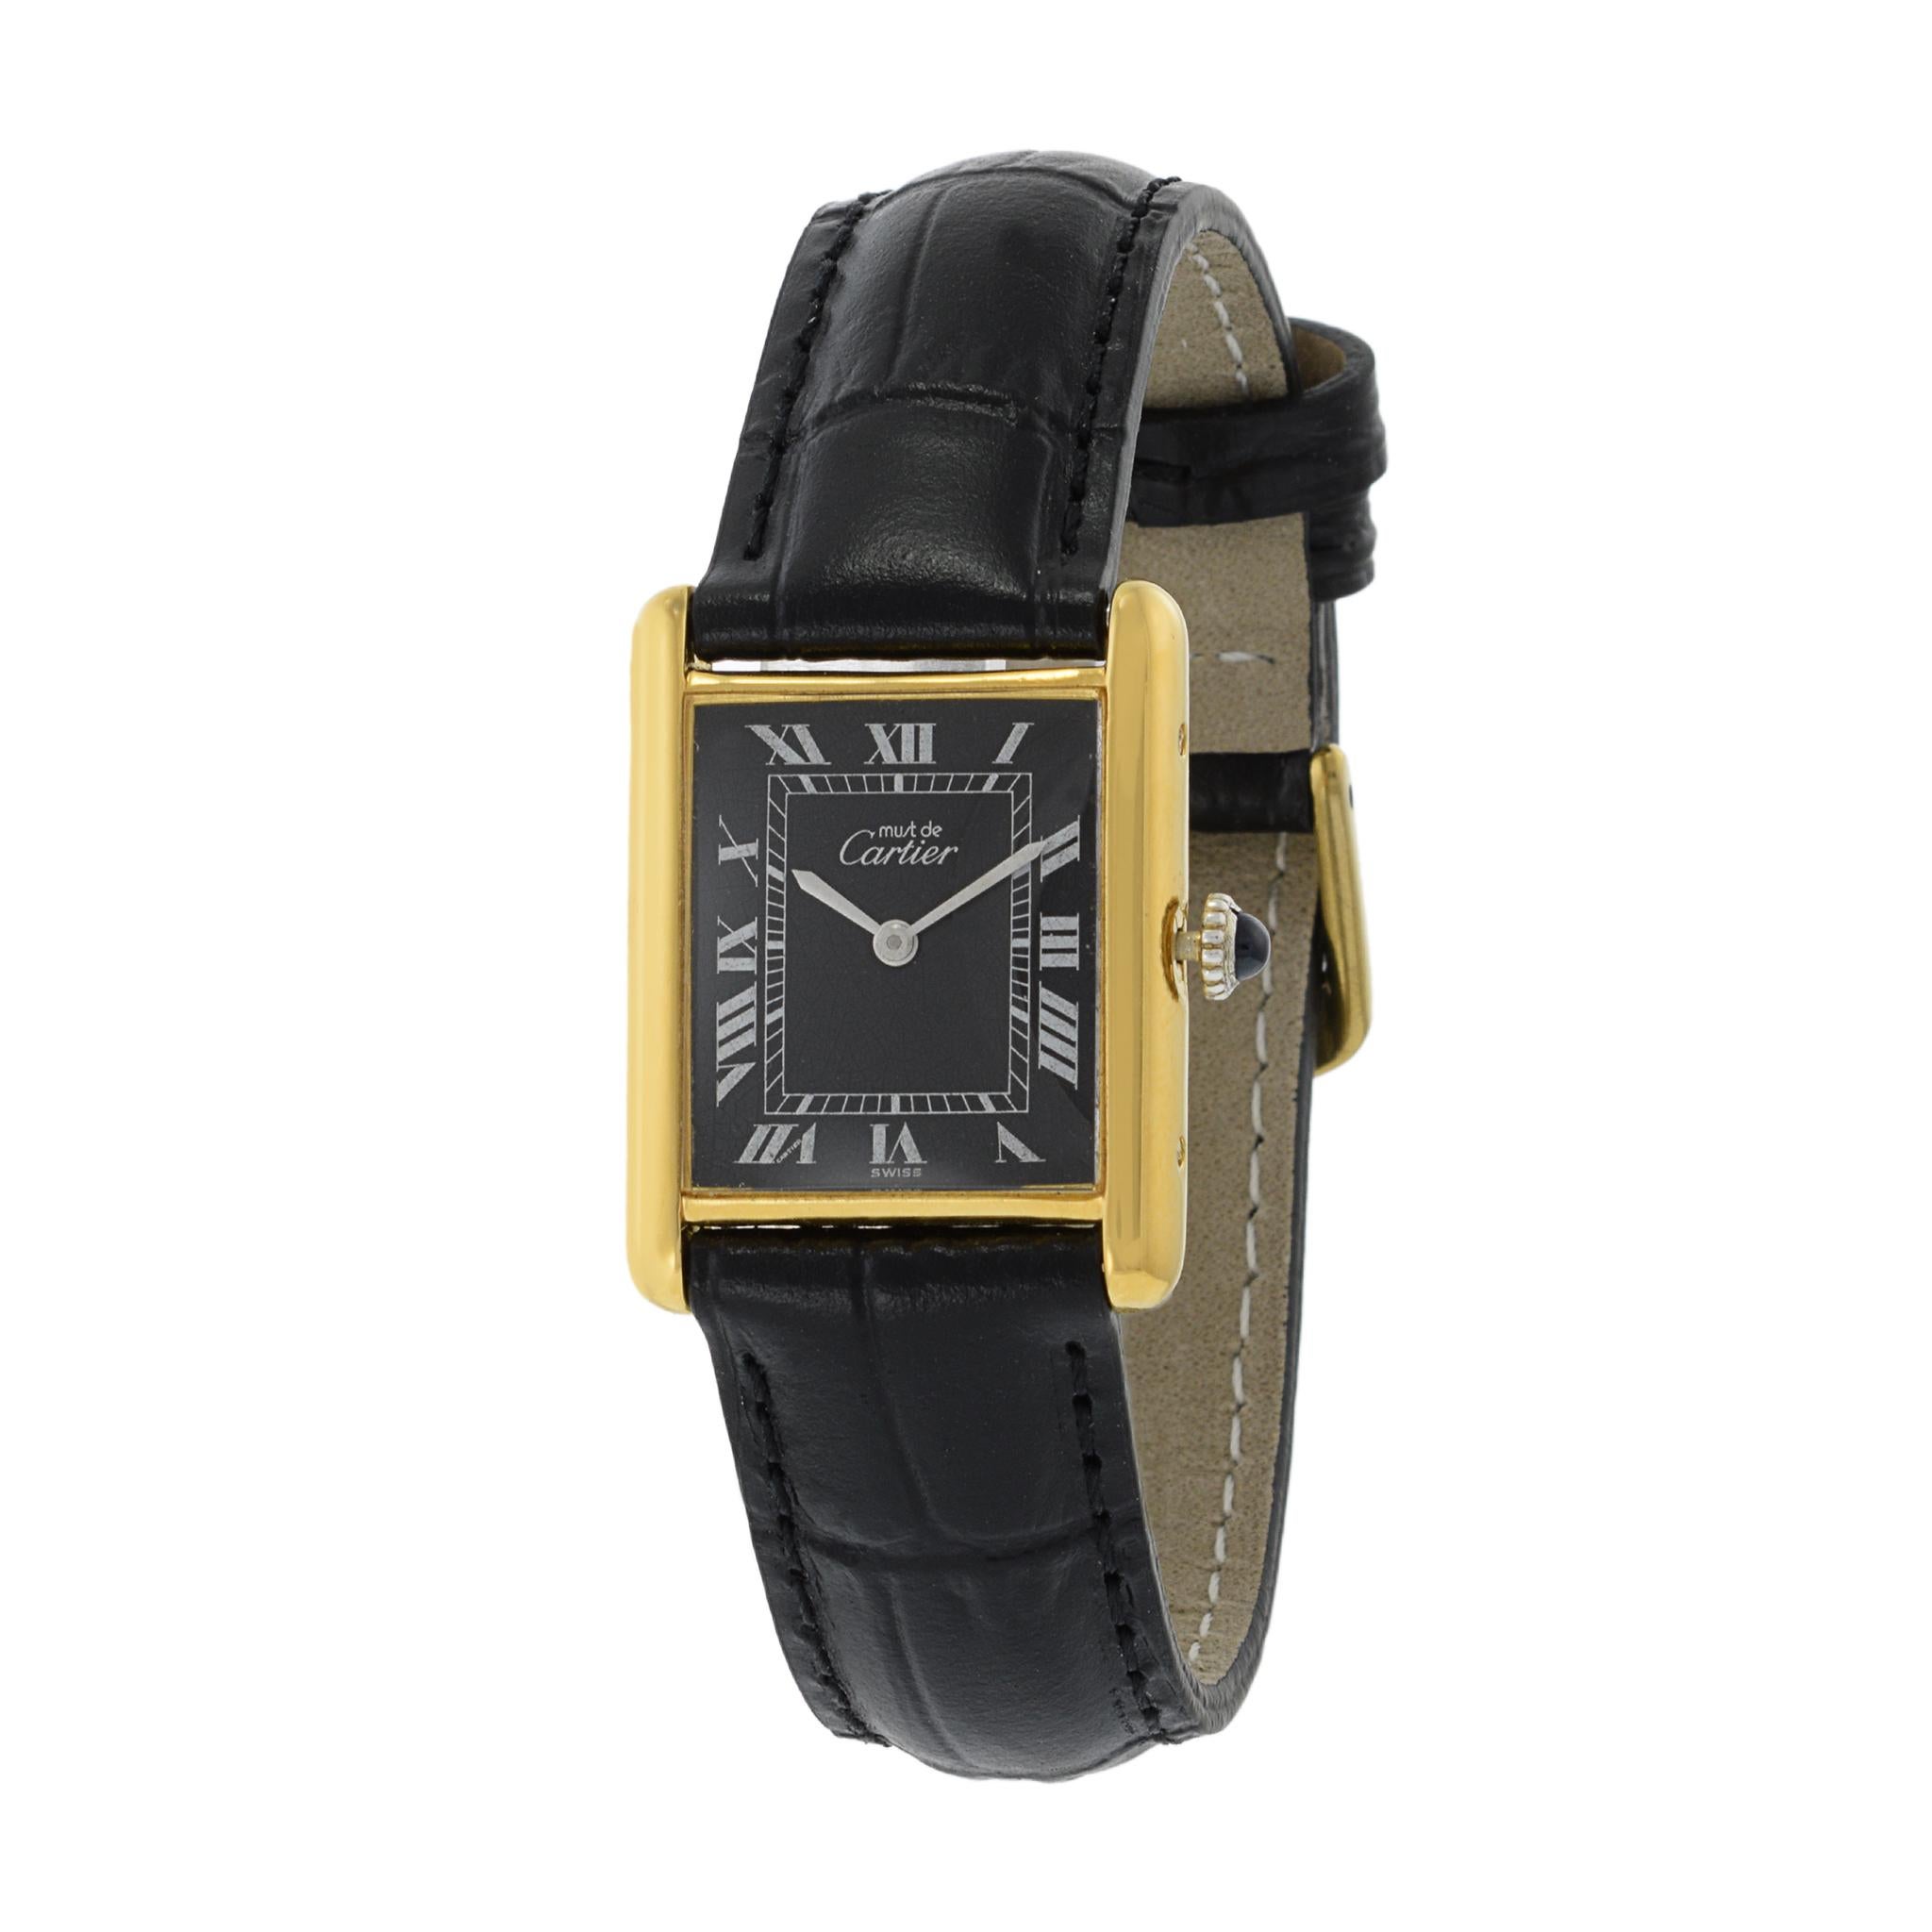 Il s'agit d'une montre réservoir Must de Cartier Vermeil des années 1970 en très bon état. La montre est animée par un mouvement à remontage manuel. Le boîtier de la montre mesure 23,5 mm x 30,5 mm et est en argent sterling recouvert d'or jaune.

Le